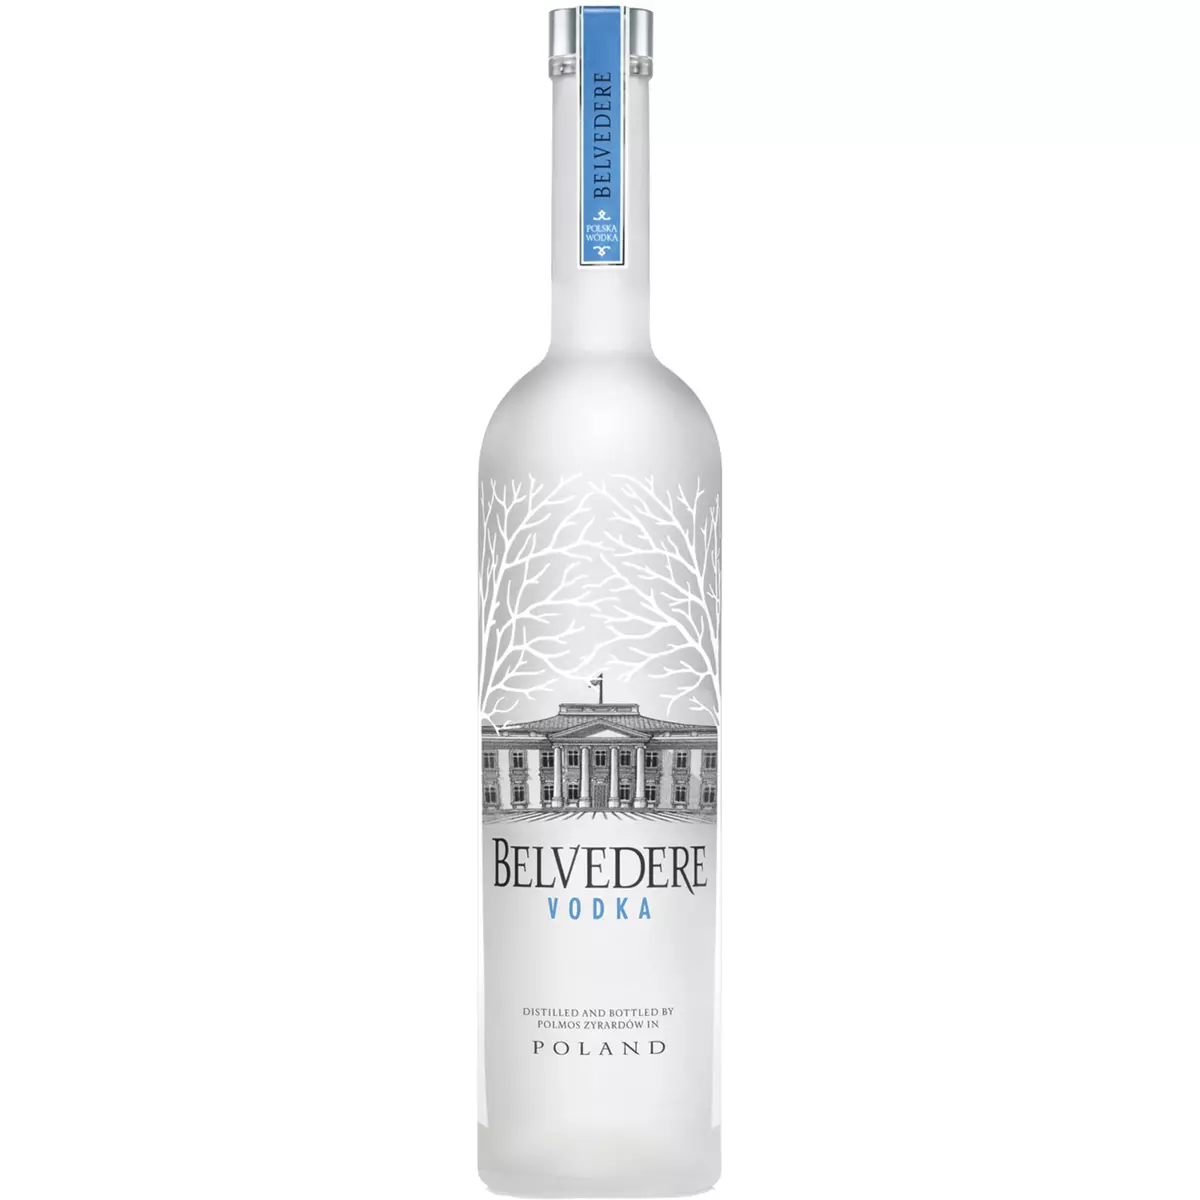 BELVEDERE Vodka polonaise 40% 70cl